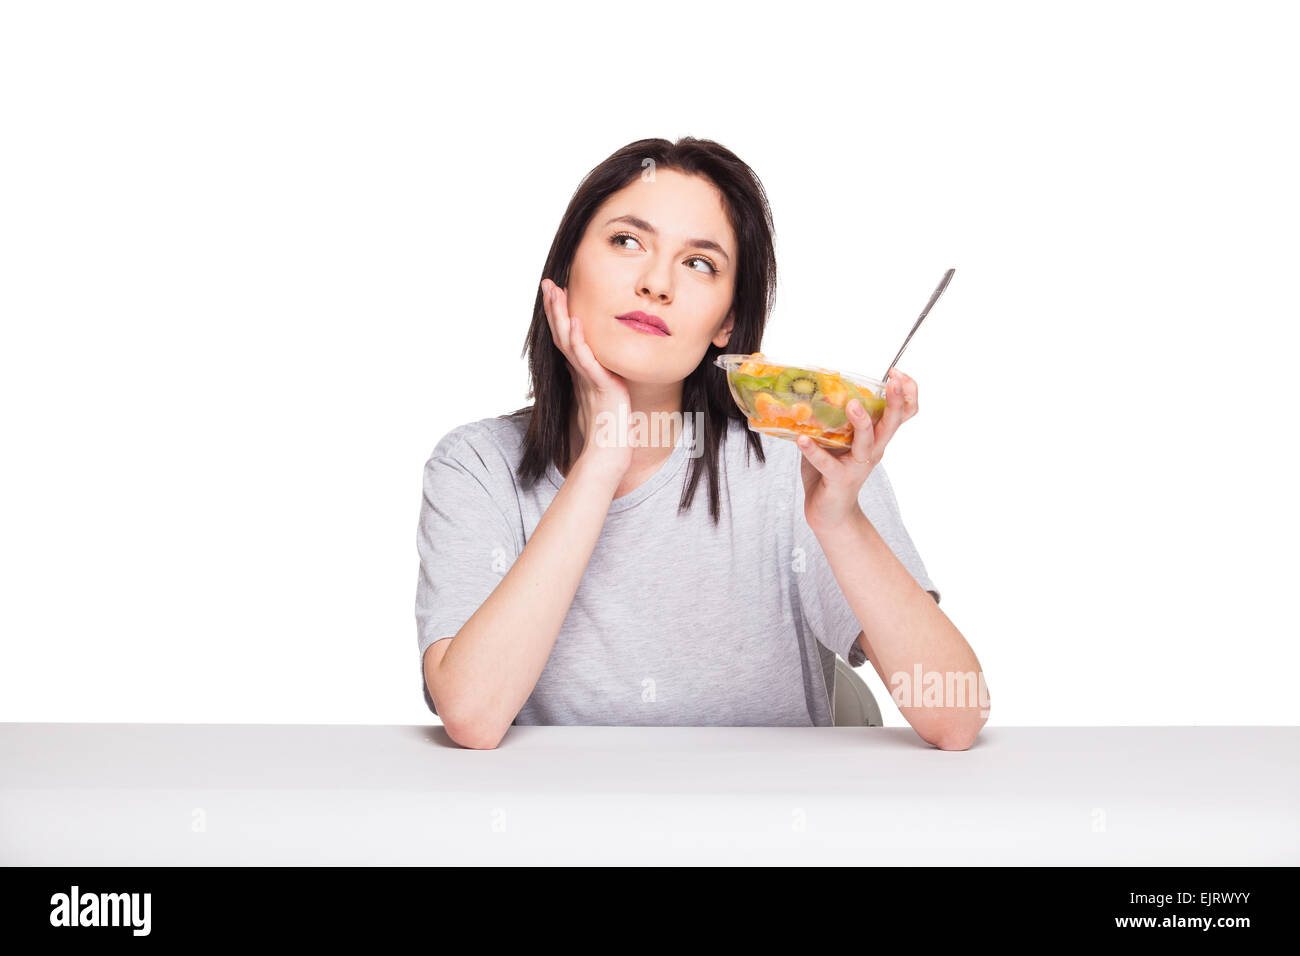 Giovane donna naturale cercando annoiato e pensando al suo pasto sano, isolato su bianco Foto Stock